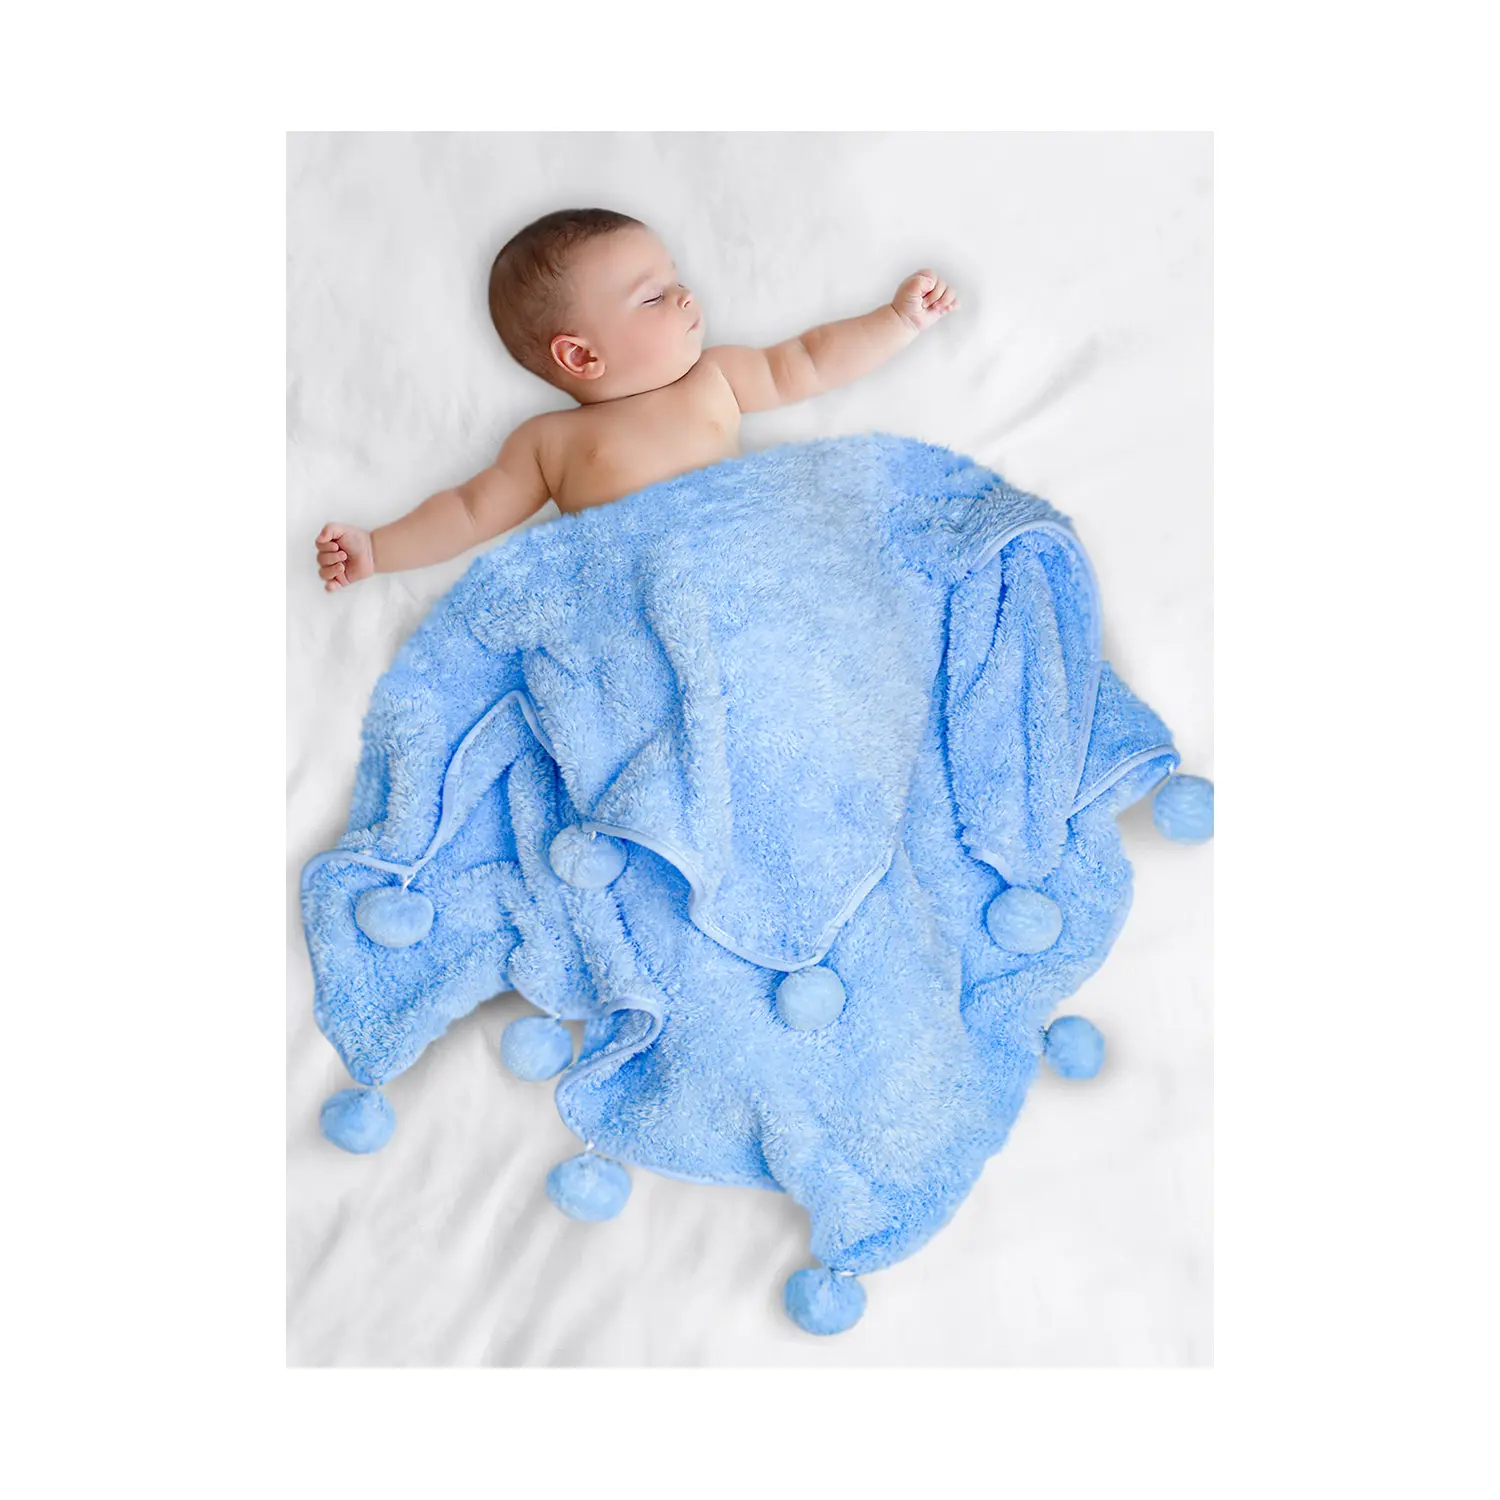 جديد تصميم مريحة سرير بيبي 100% المحلية بوم بوم الطفل بطانية